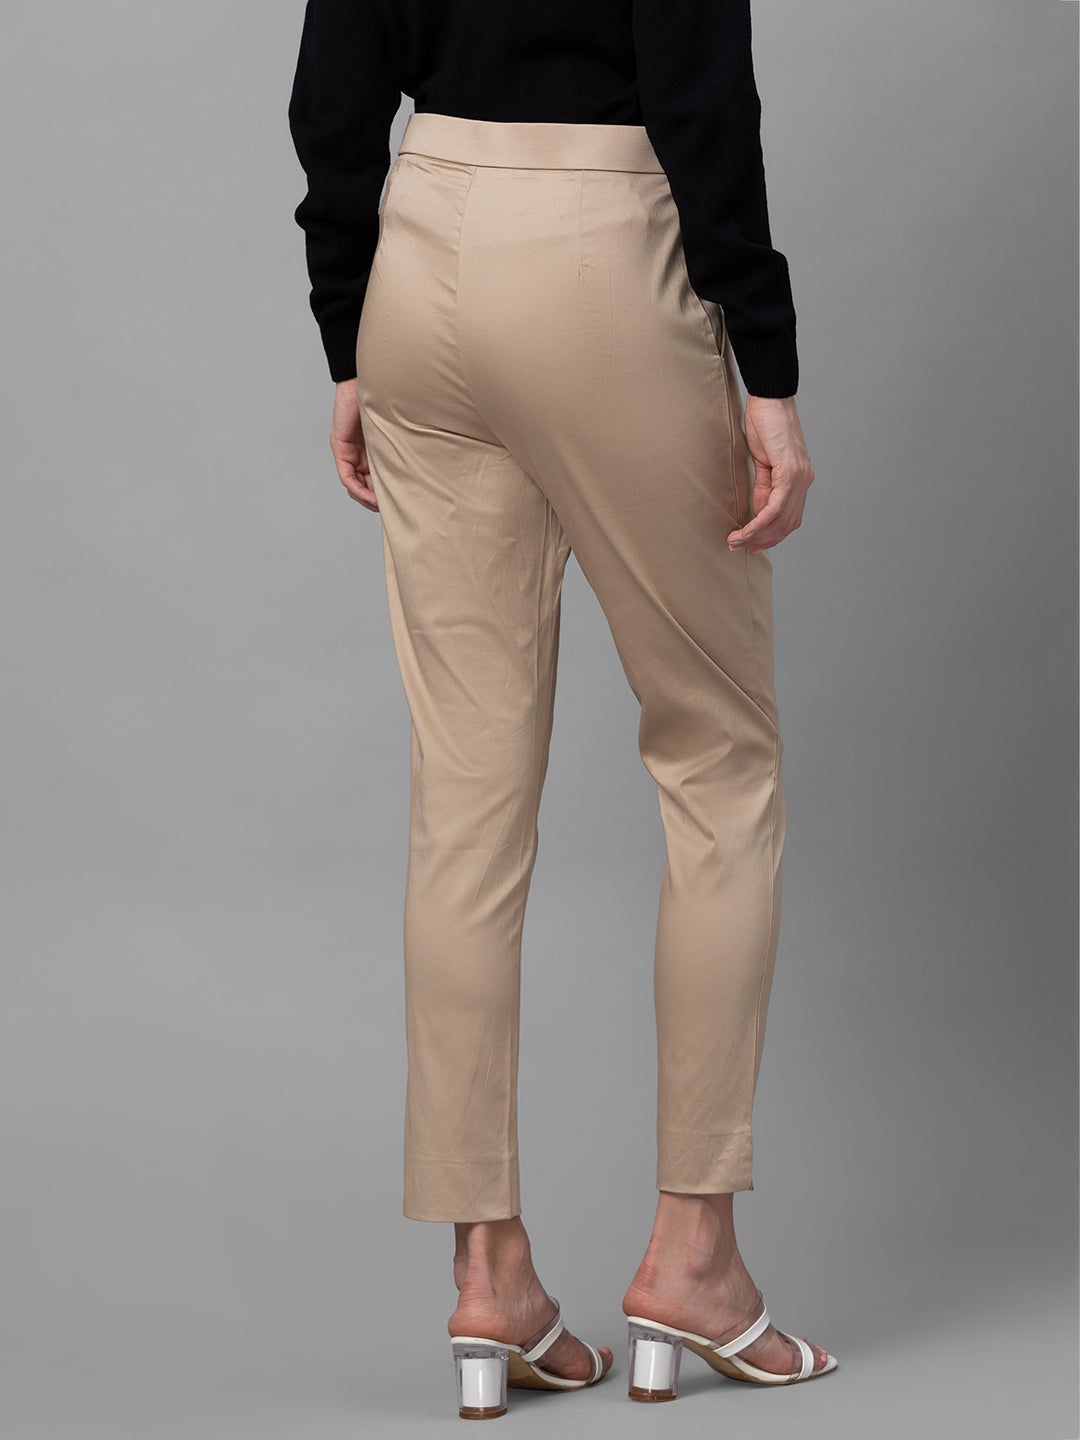 Globus Beige Solid Slim Fit Regular Trousers